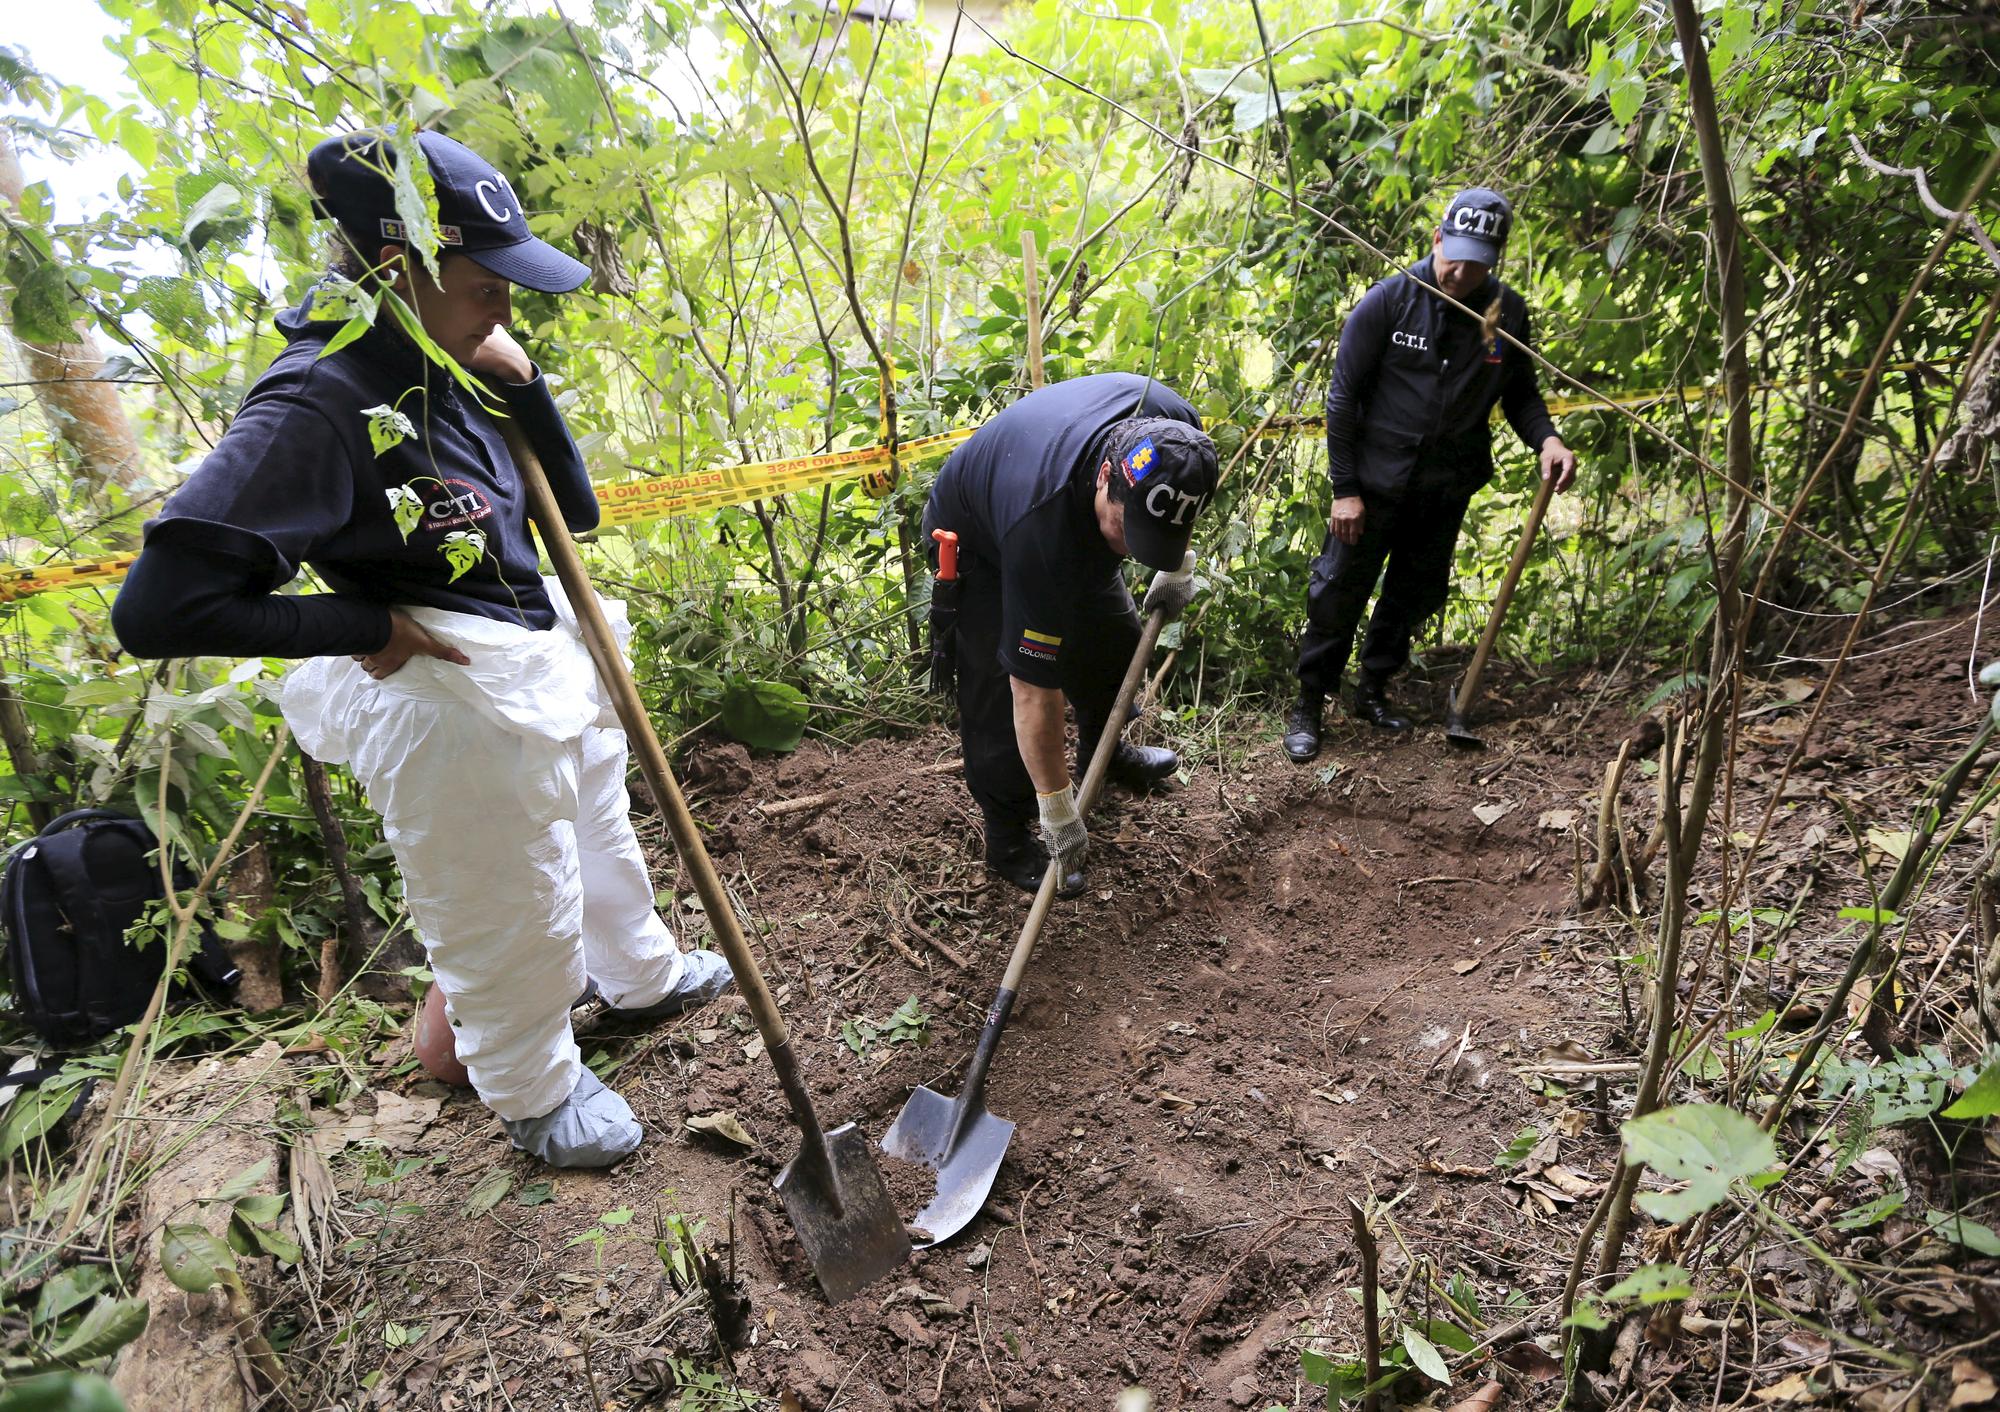 Grâce aux indications d'ex-guérilleros, des équipes médico-légales tentent de retrouver le corps de personnes disparues pendant le conflit en Colombie. [Reuters - Jose Miguel Gomez]